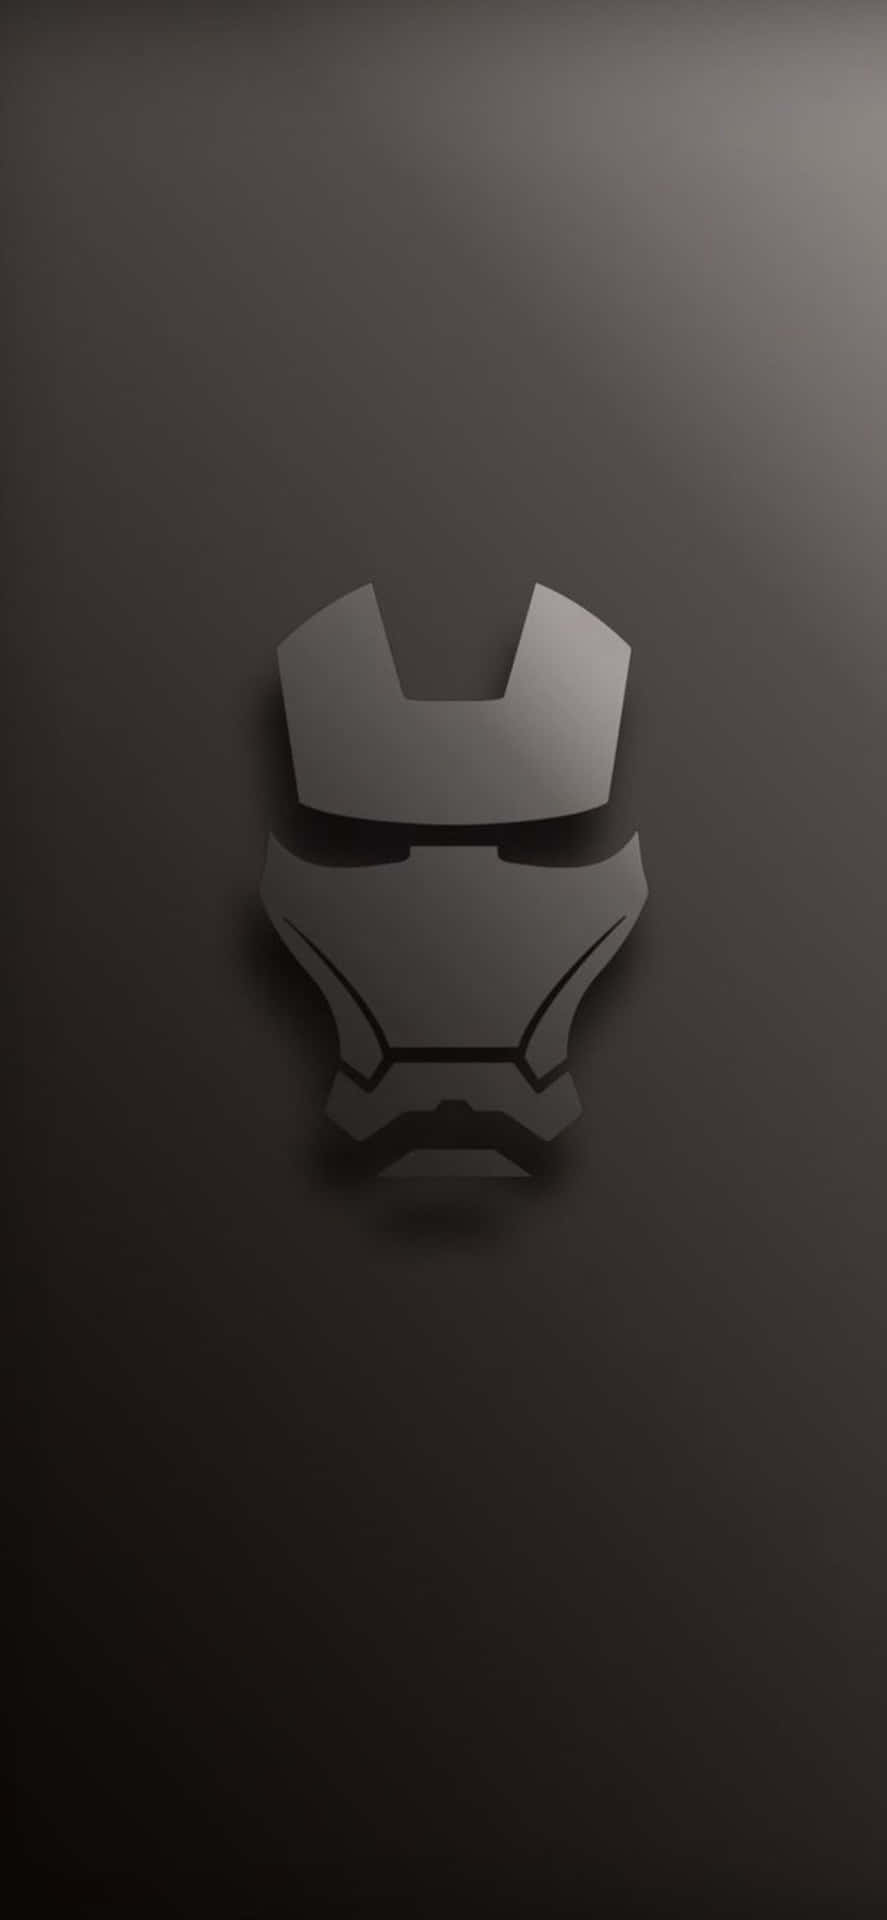 Tag Iron Man med dig ved at downloade den 4K-version til mobile enheder. Wallpaper